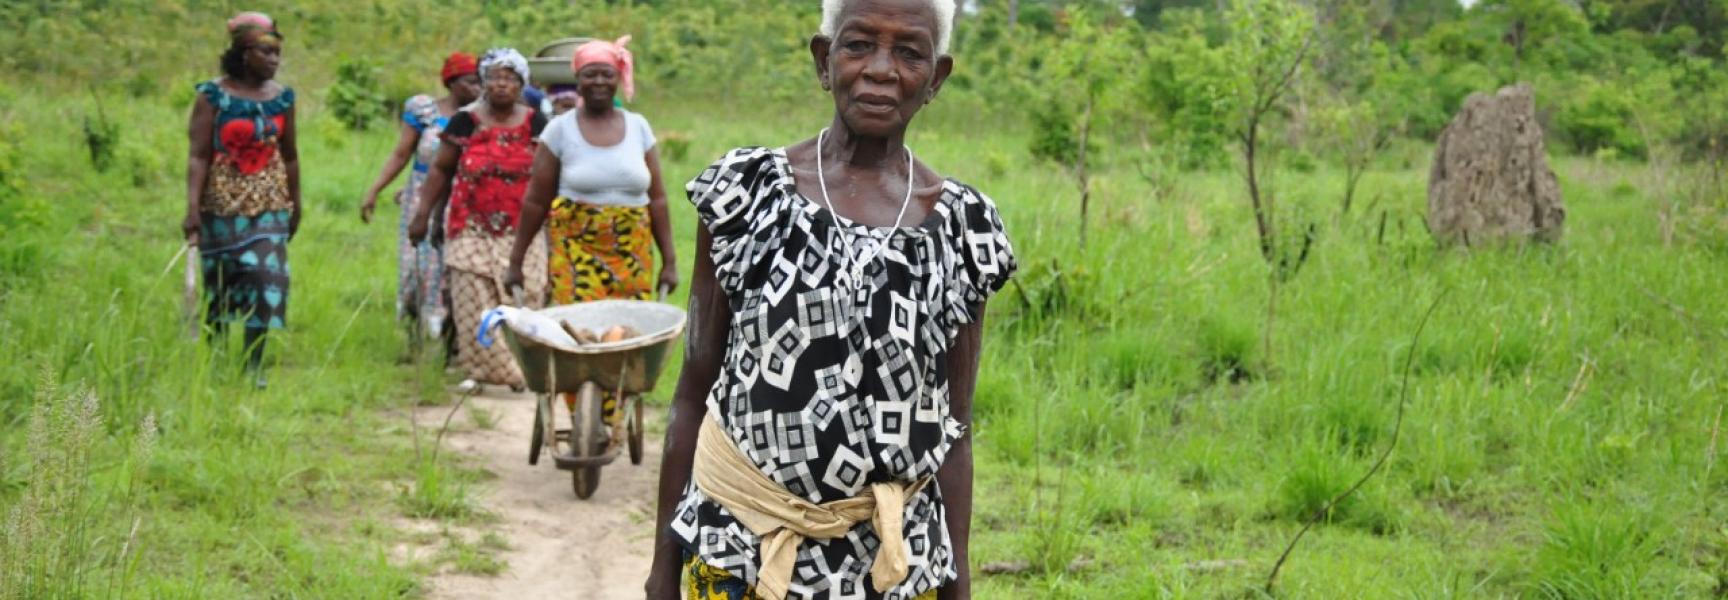 Women farmers in Côte d'Ivoire